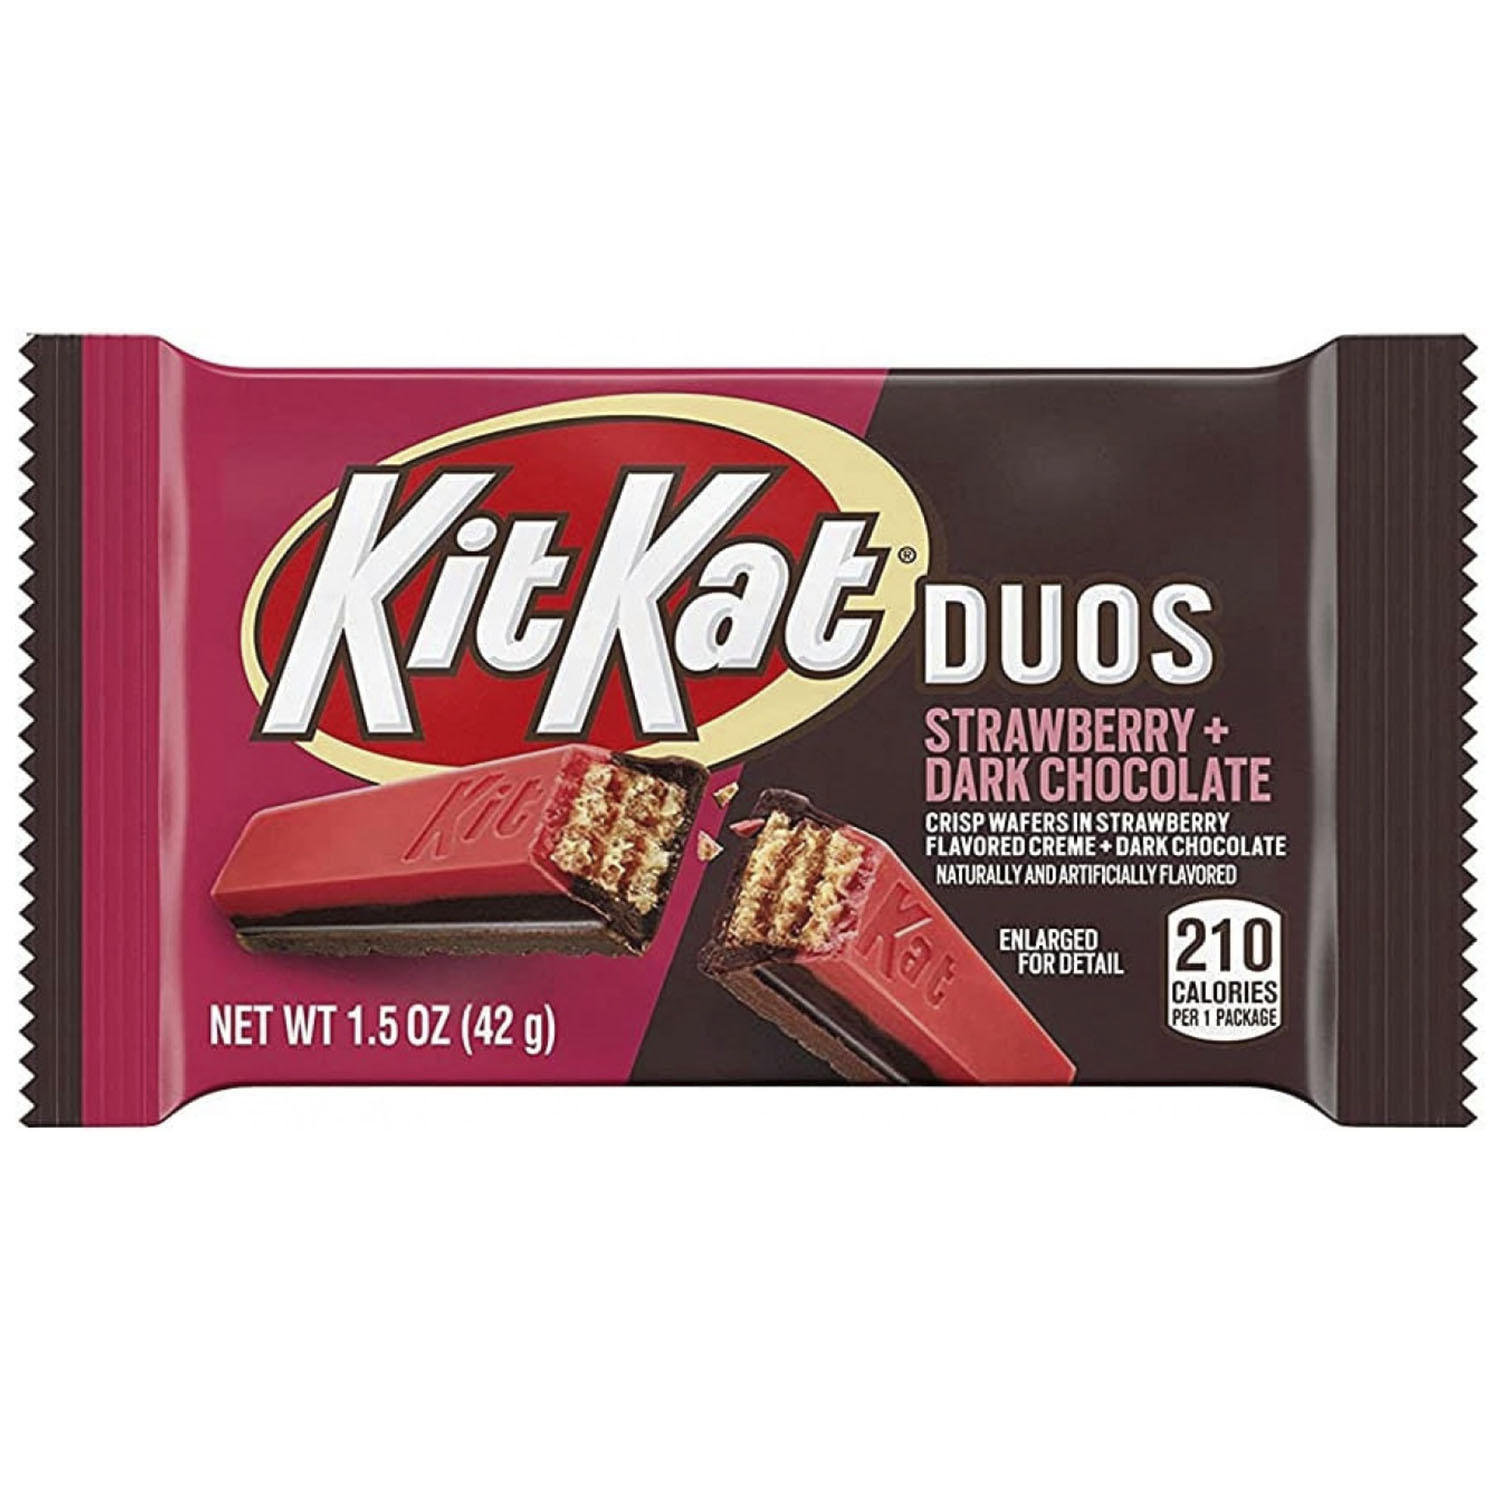 Батончик Kit Kat Duos Strawberry and Dark Chocolate Candy Bar 42 г - фото 1